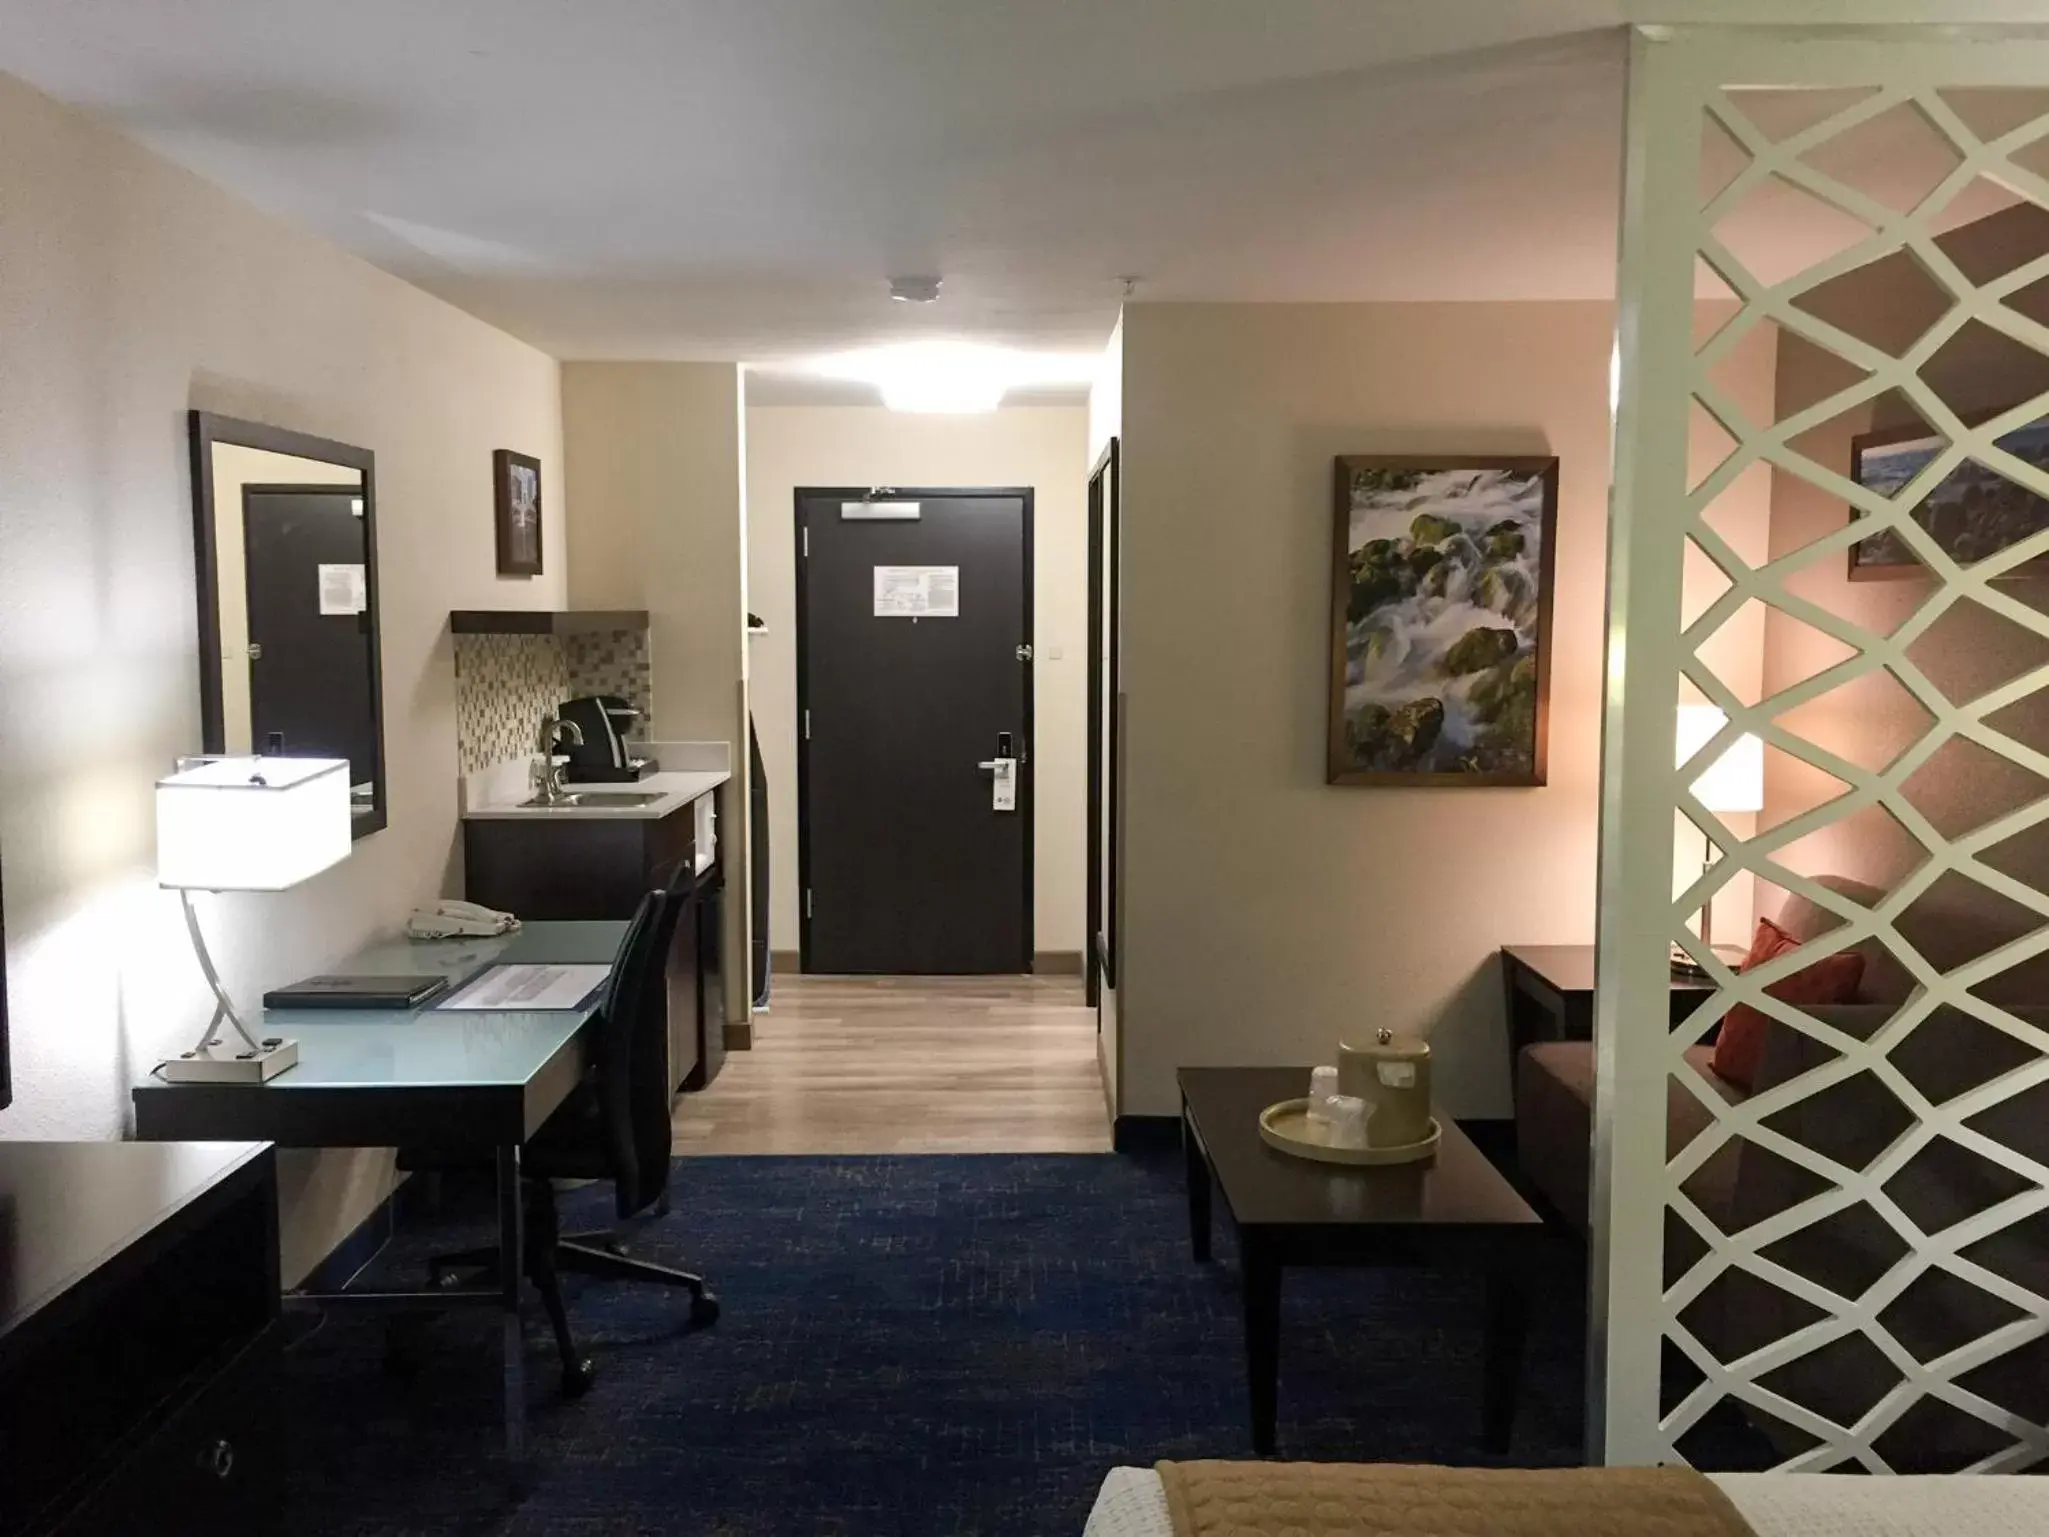 Best Western Plus Portland Airport Hotel & Suites